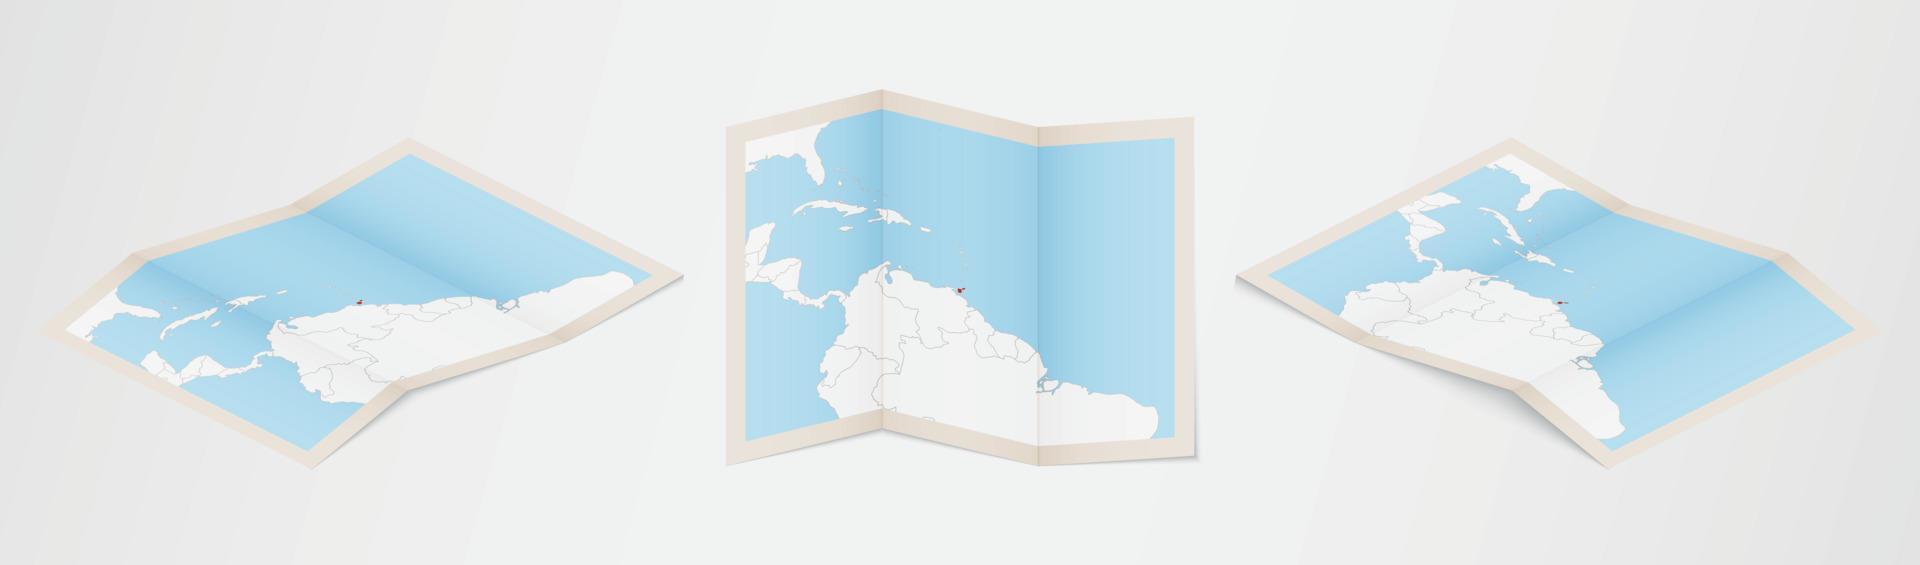 mapa dobrado de trinidad e tobago em três versões diferentes. vetor